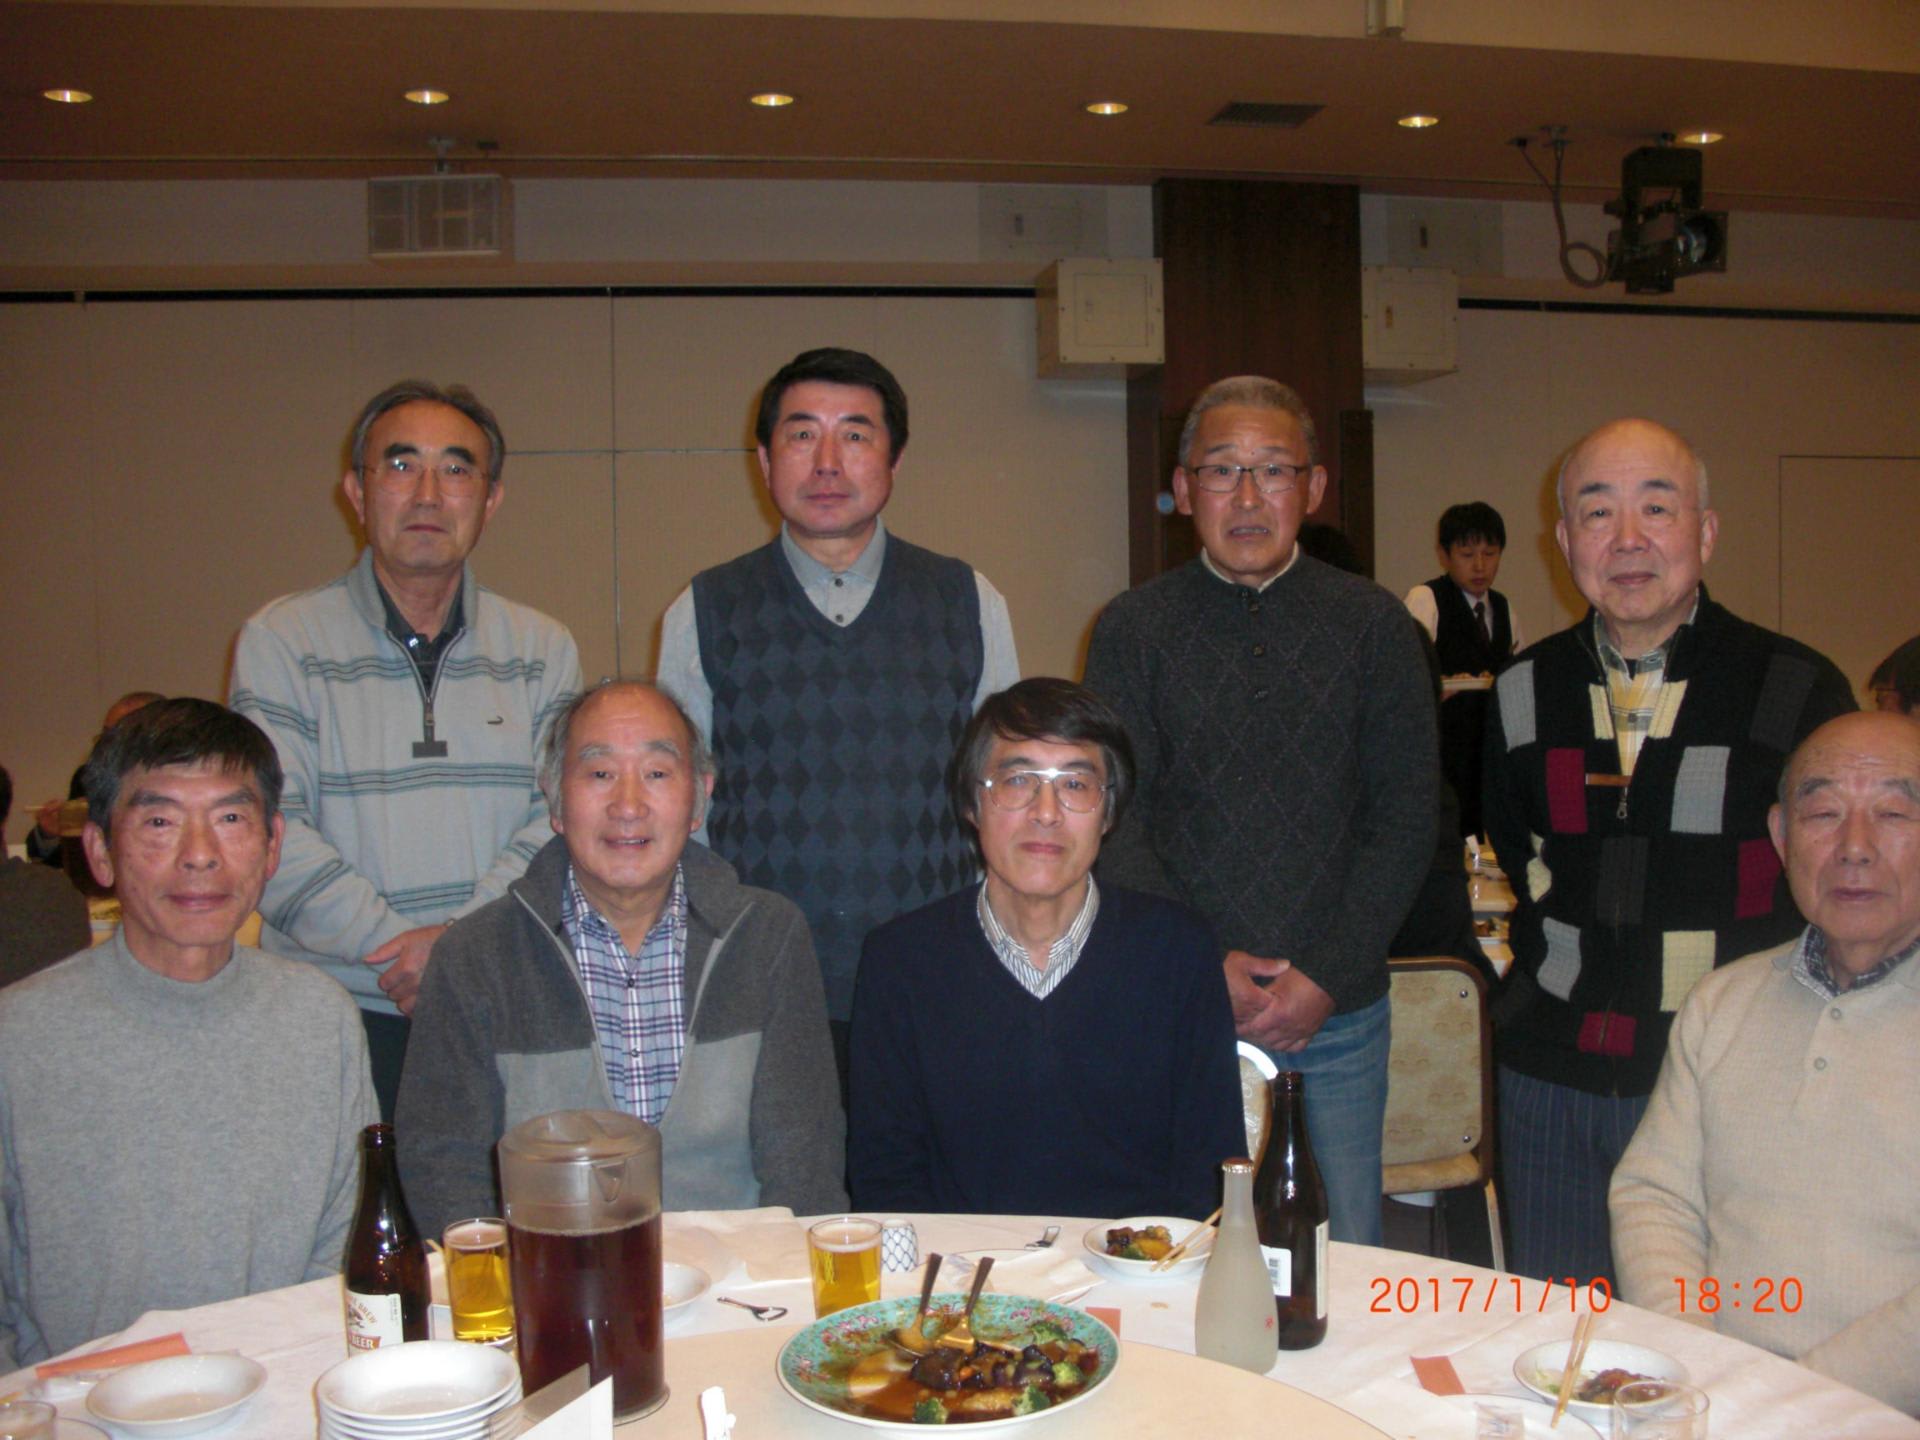 平成29年千曲川支部新年会が開催されました - 千曲川支部ブログ